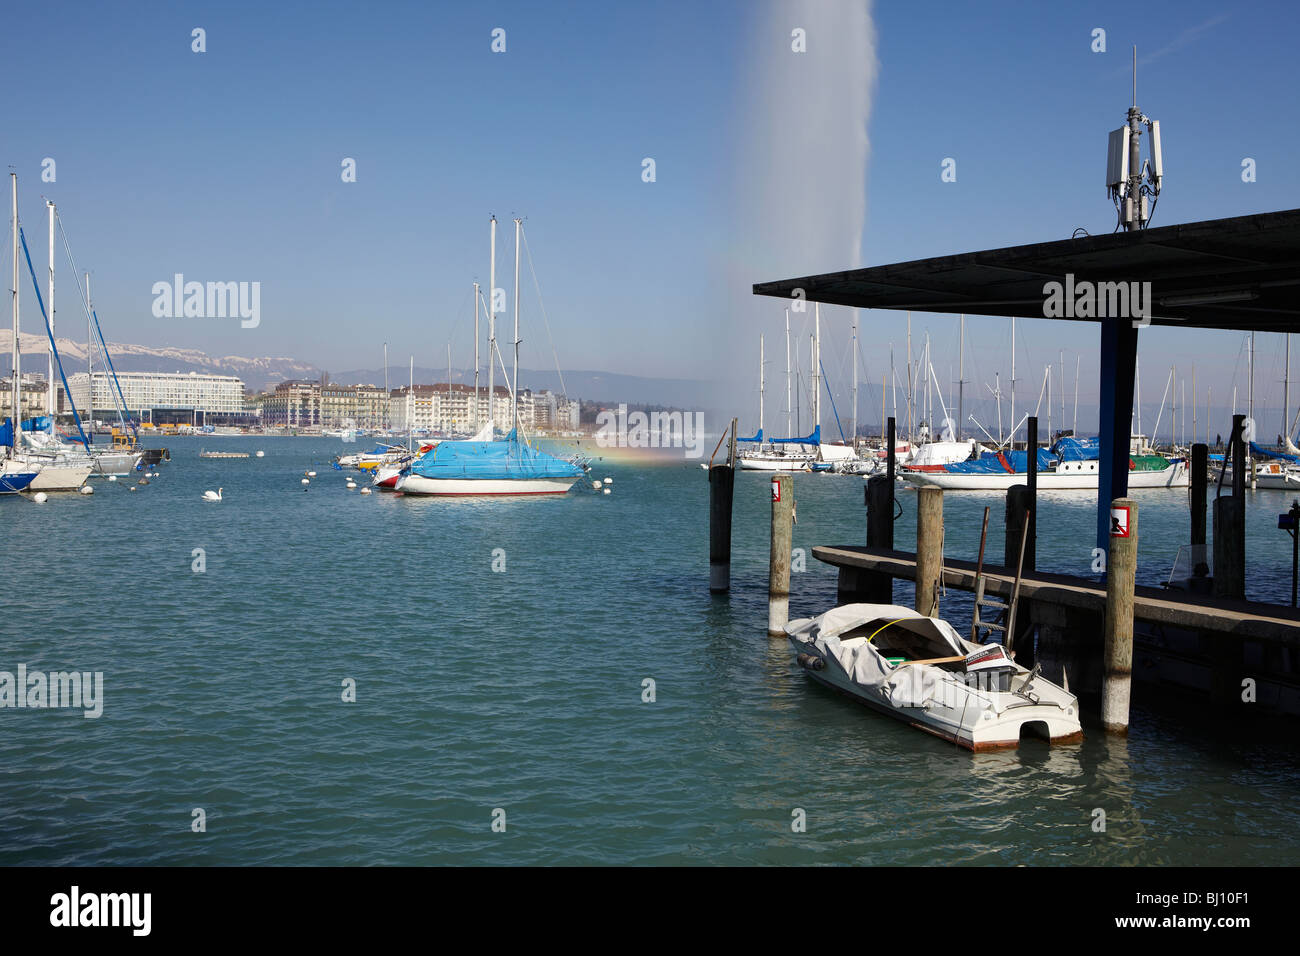 Boat dock et le jet d'eau dans le lac de Genève, Suisse Banque D'Images